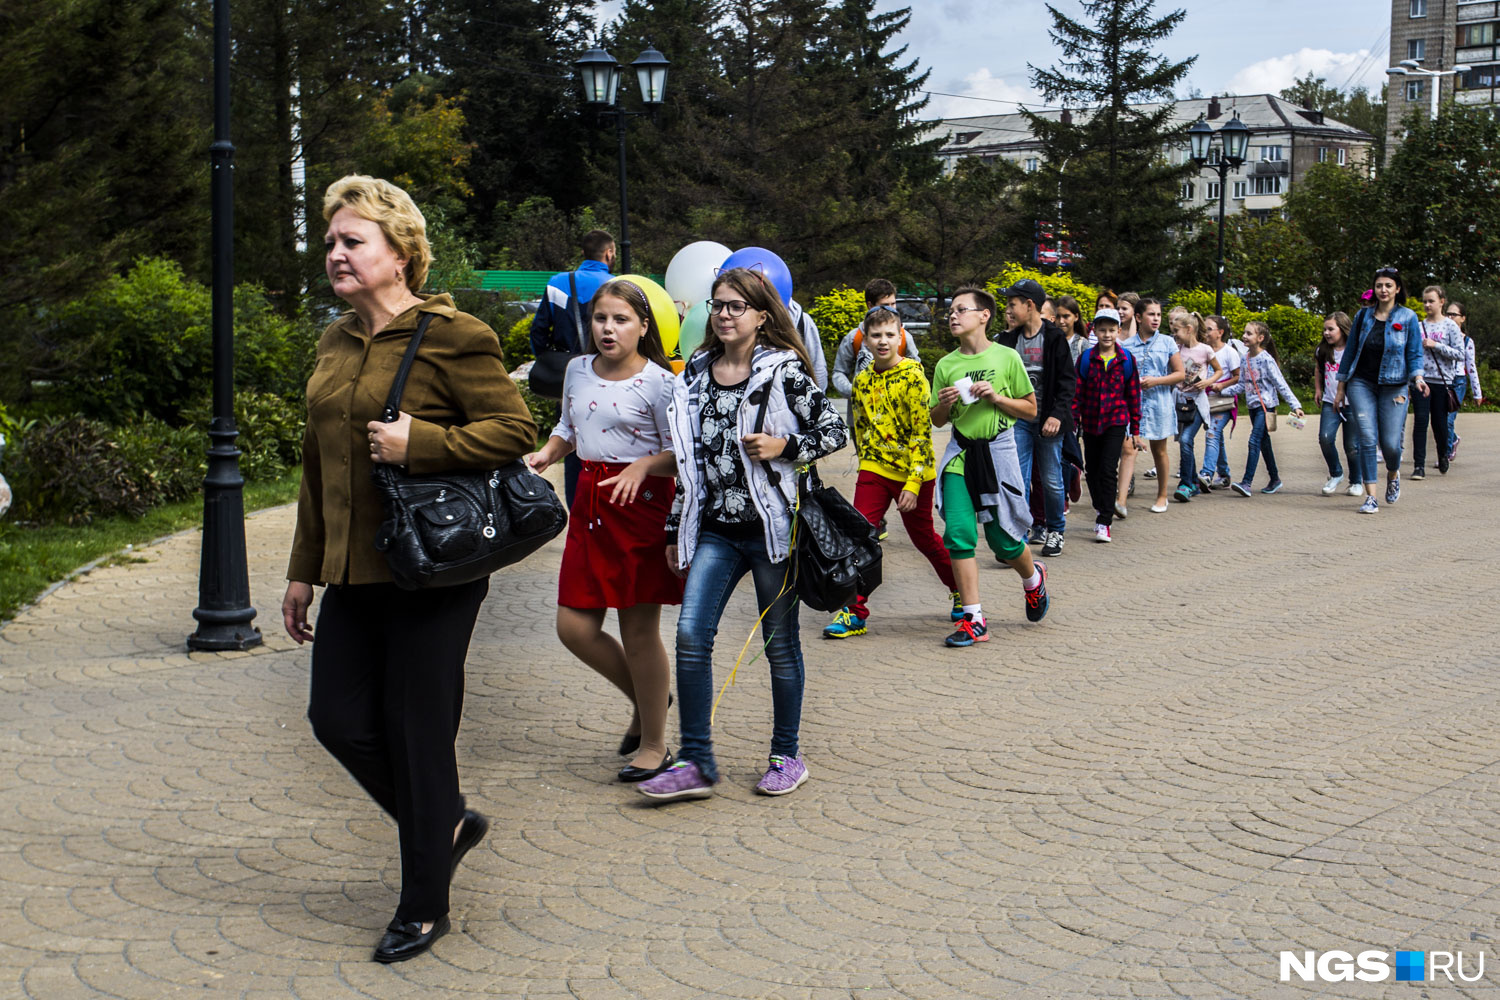 Взрослых пускали в зоопарк по билетам (300 рублей)